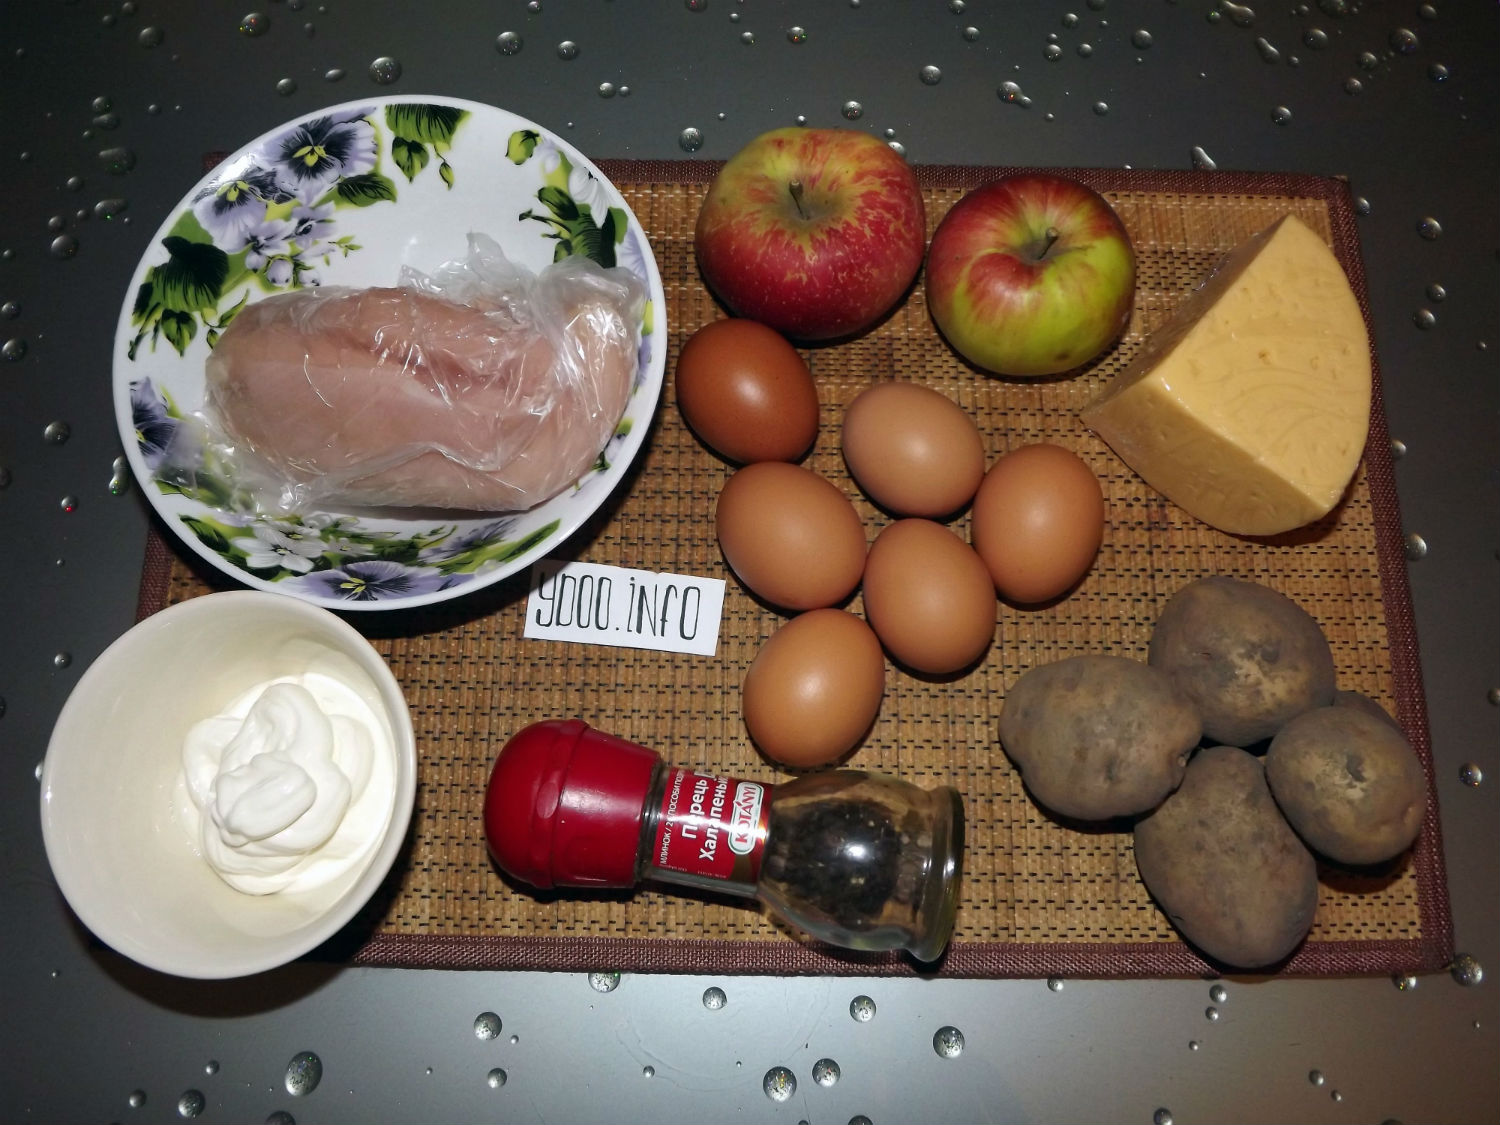 куриная грудка, яйца, яблоки, твердый сыр, майонез и специи на кухонном столе